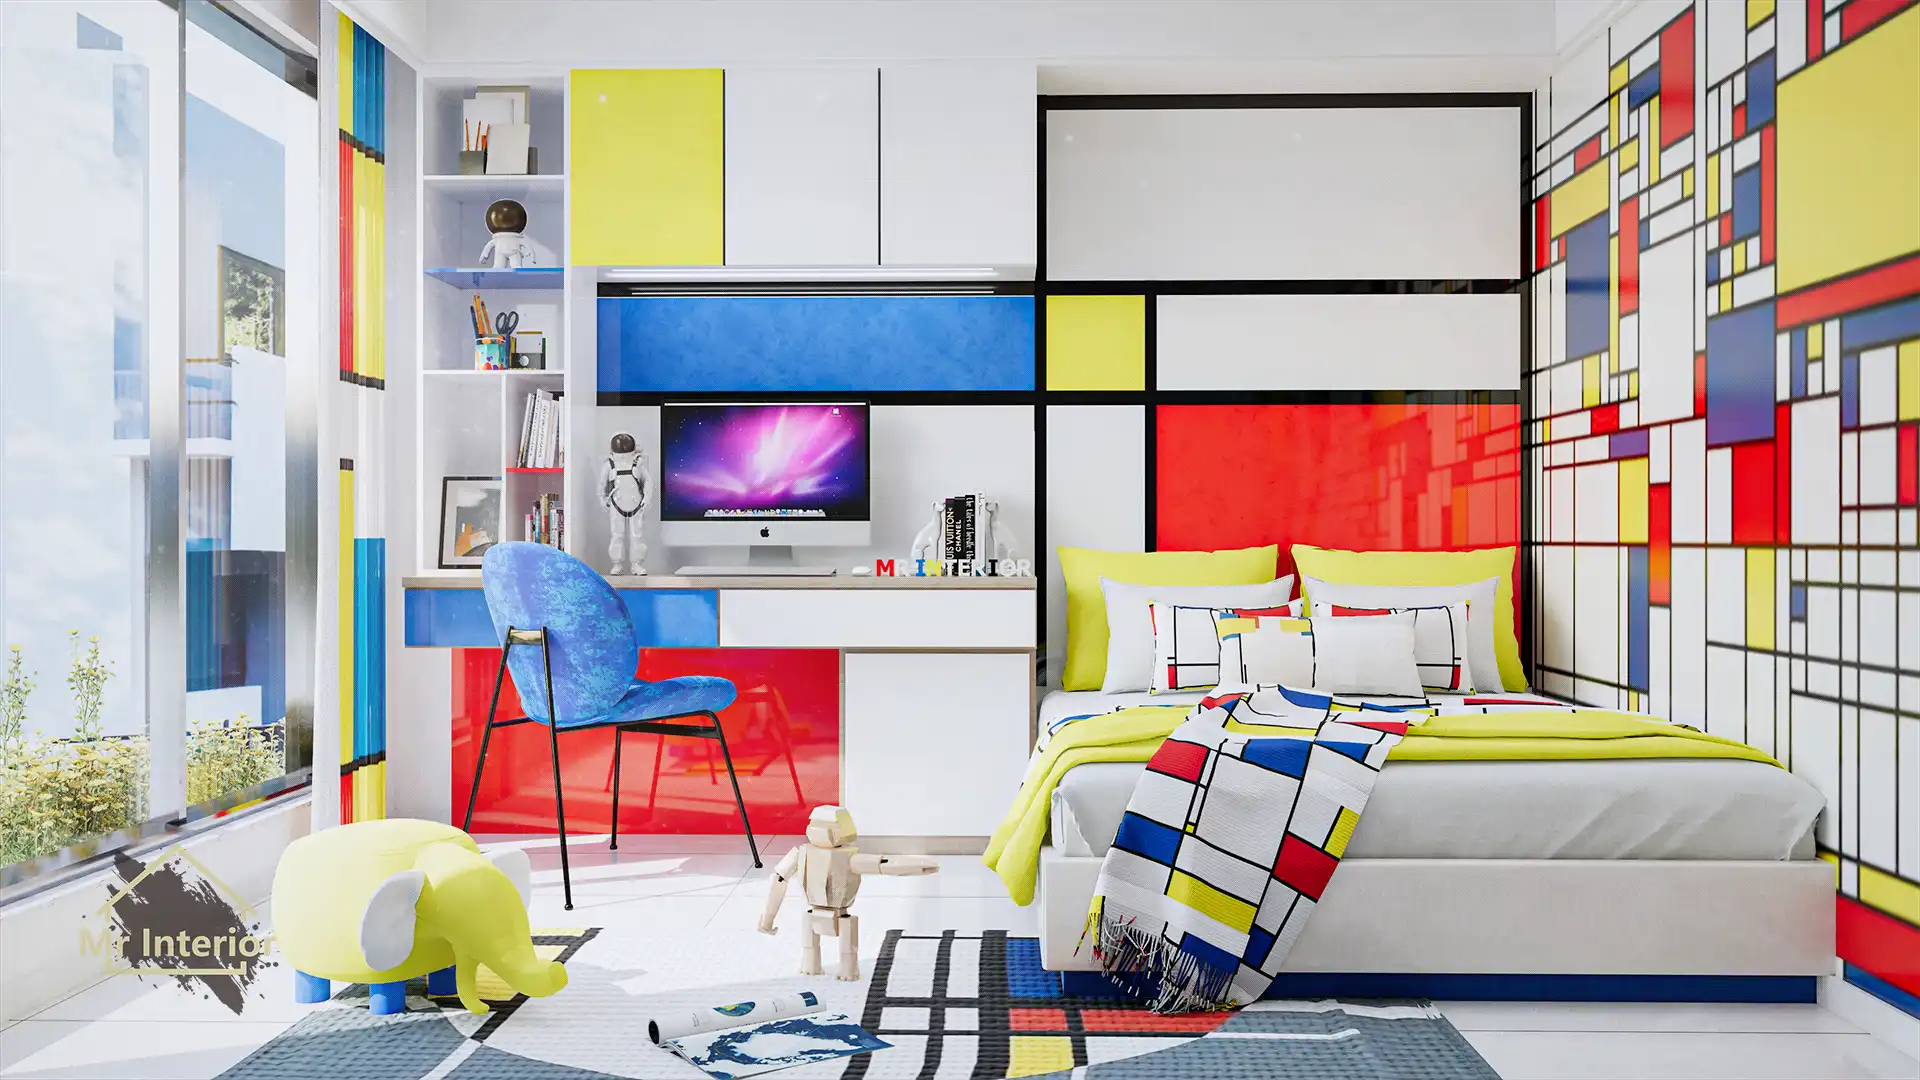 小滿-風格派設計風格房間，白色主調，紅色黃色藍色點綴。雙人床，書枱，衣櫃。Mr Interior室內設計、裝修、傢俬風格。